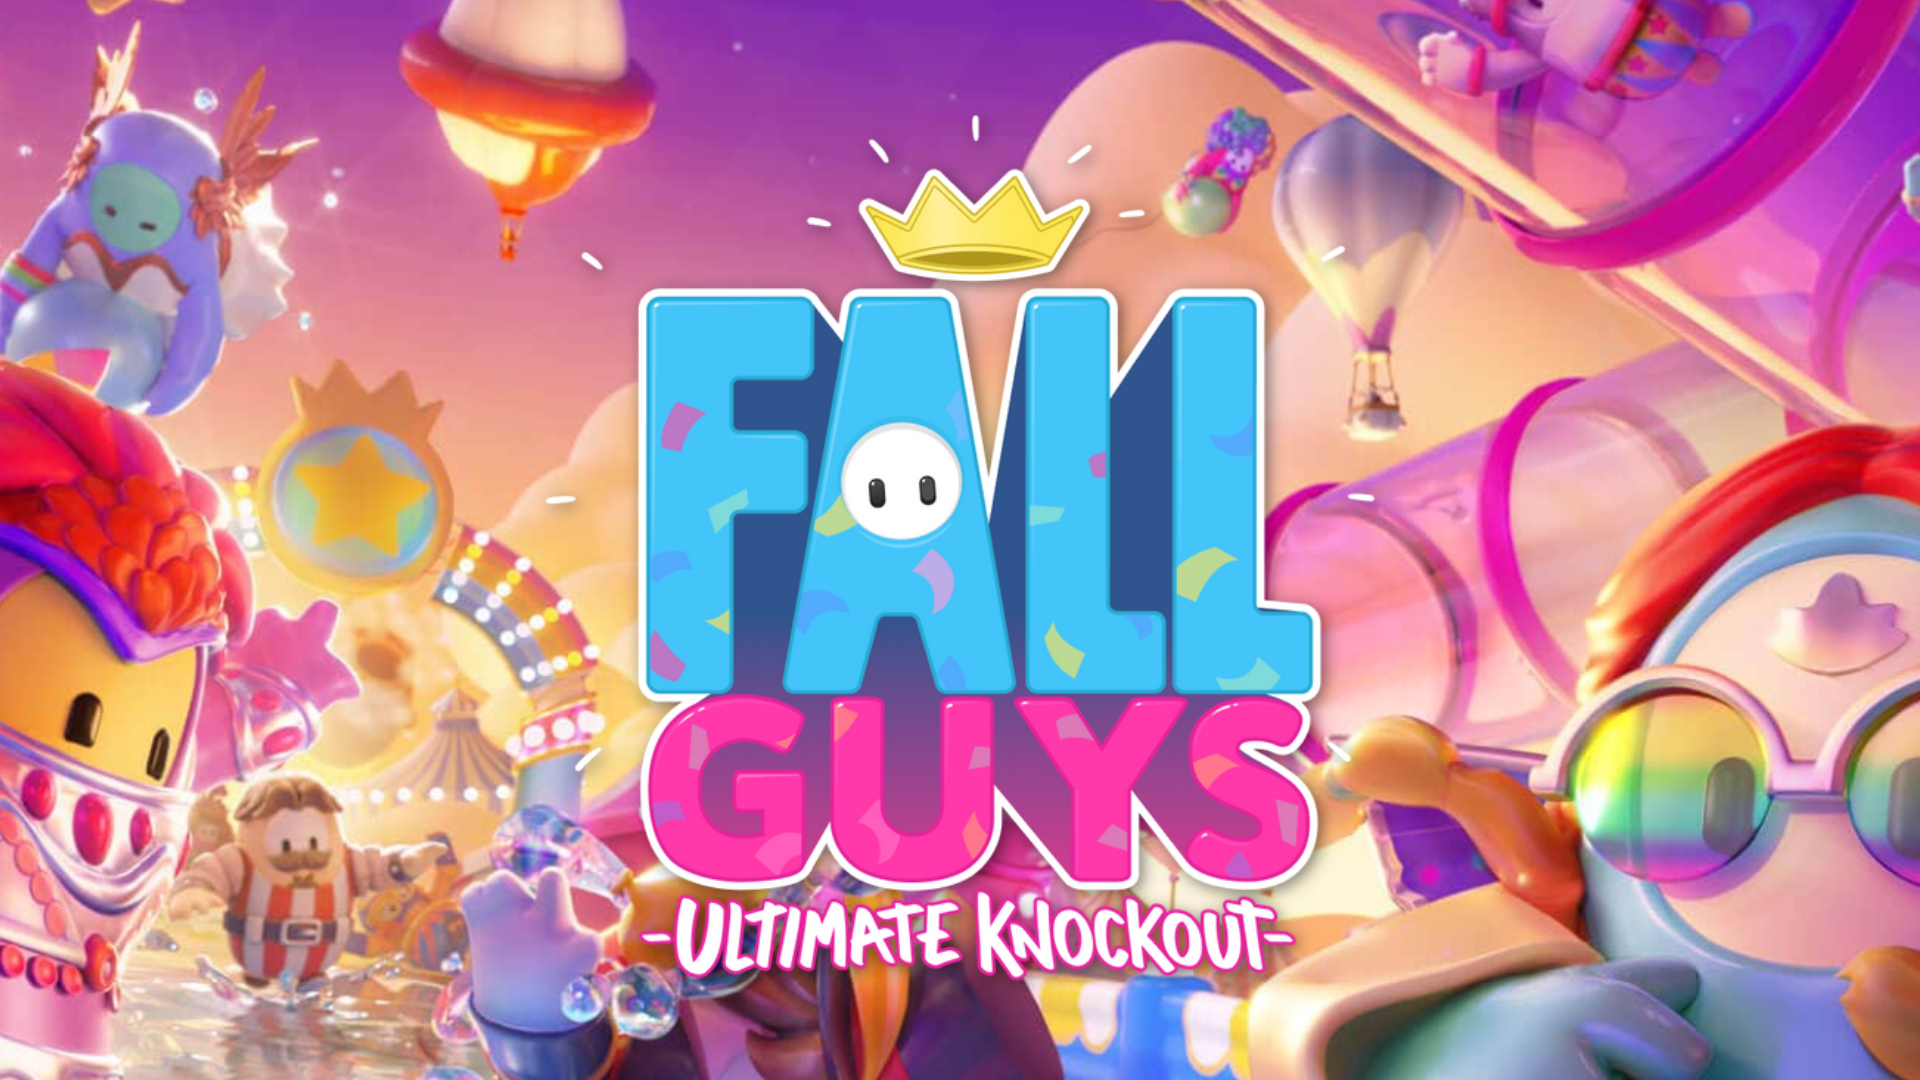 QUALIFICADO! Fall Guys se tornará free to play em breve